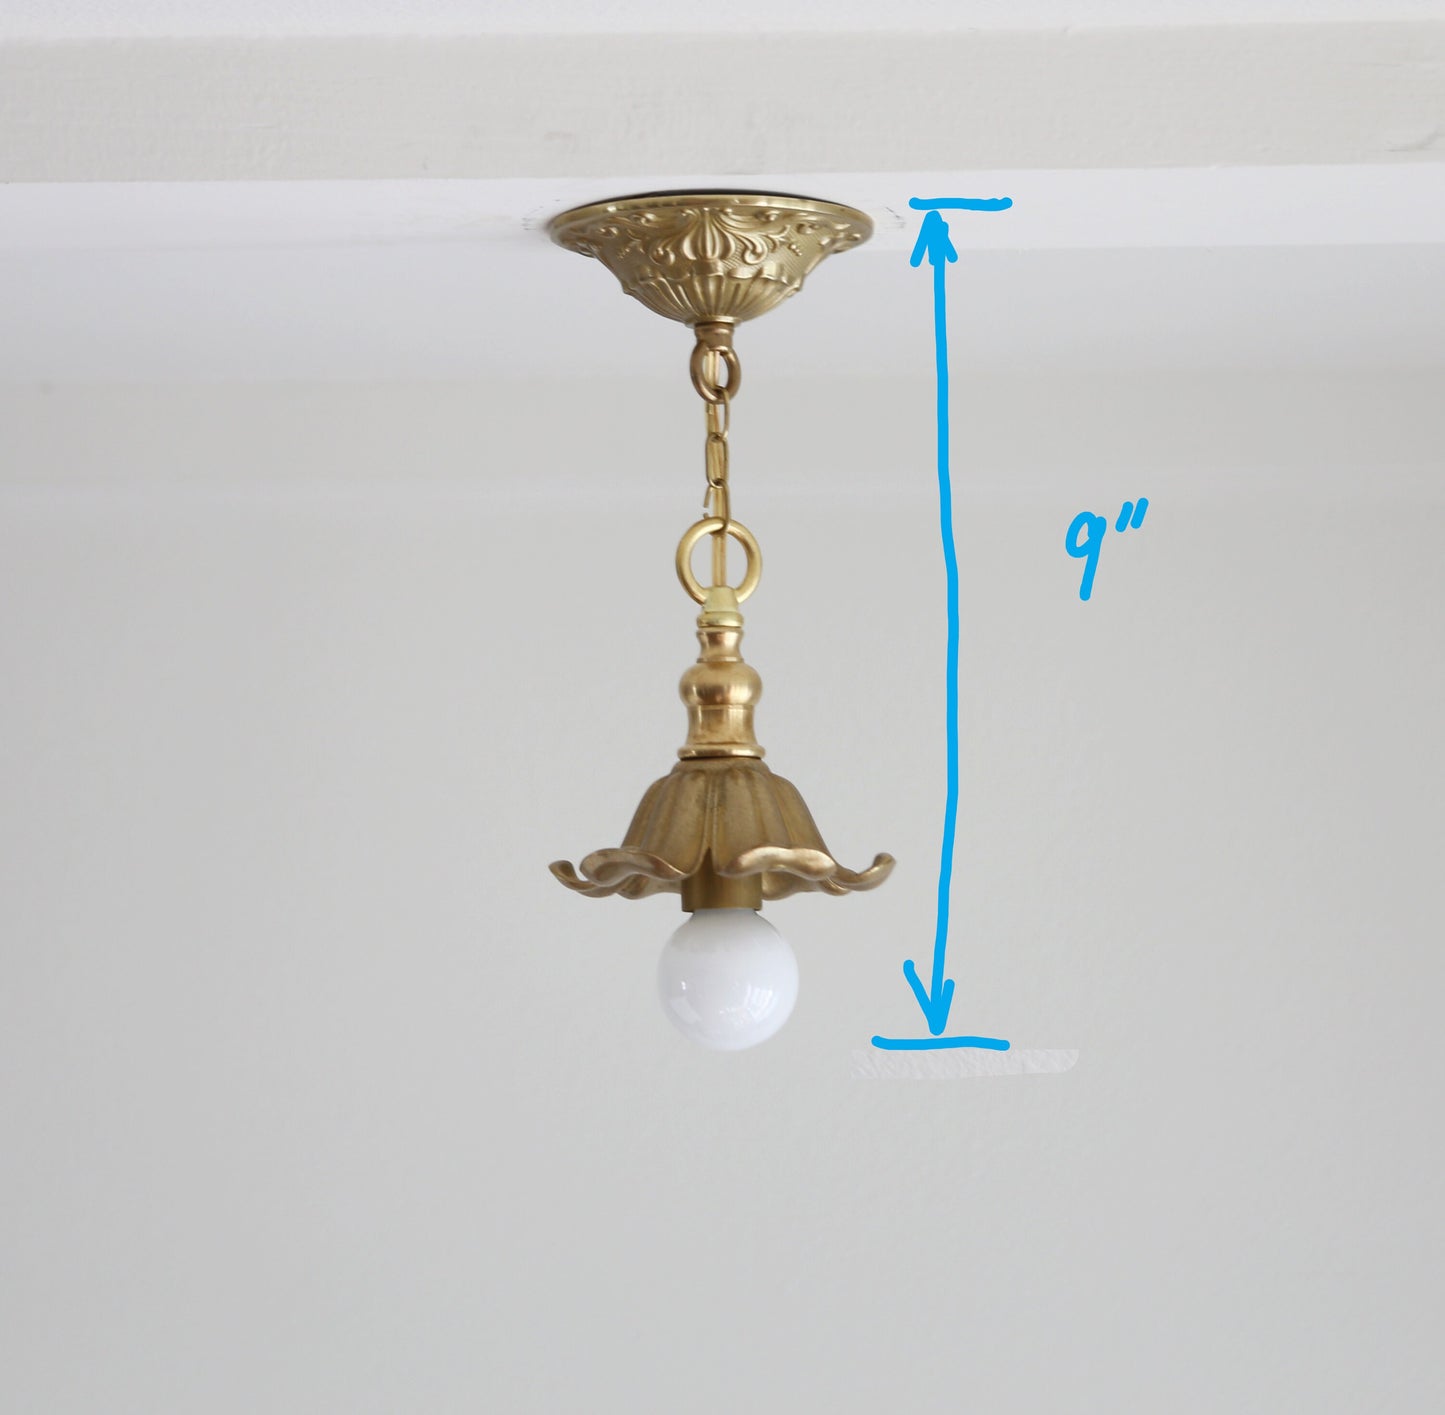 Brass Pendant  light with flower shape lamp holder, Classic brass pendant light